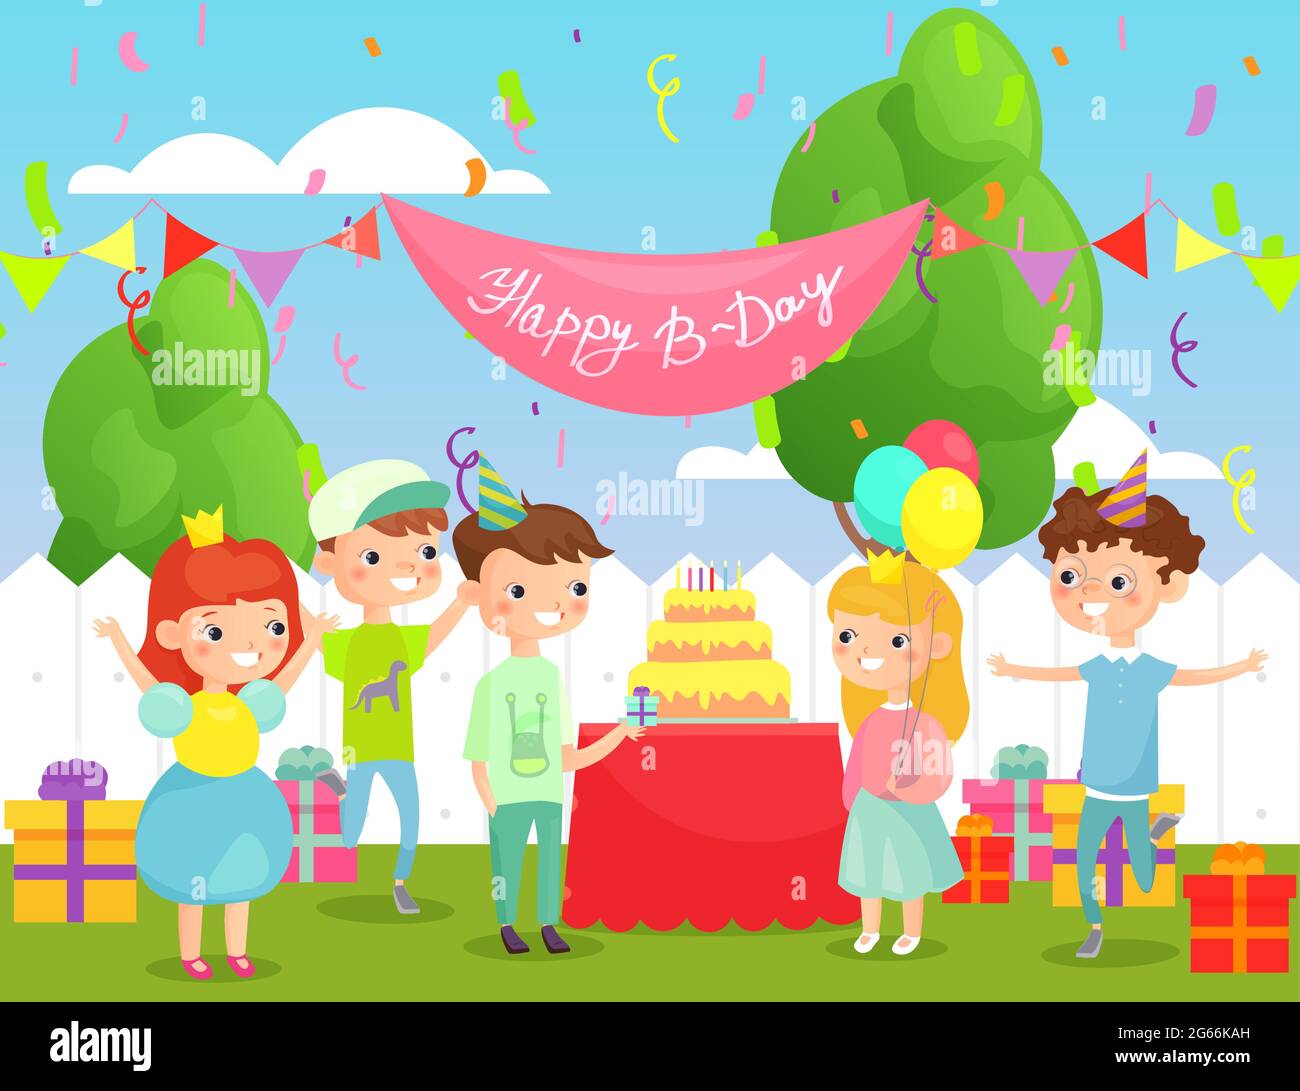 Illustration vectorielle de la fête d'anniversaire des enfants dans la cour avec beaucoup d'enfants heureux dans des vêtements et la décoration lumineux, grand gâteau et beaucoup de cadeaux. Heureux Illustration de Vecteur